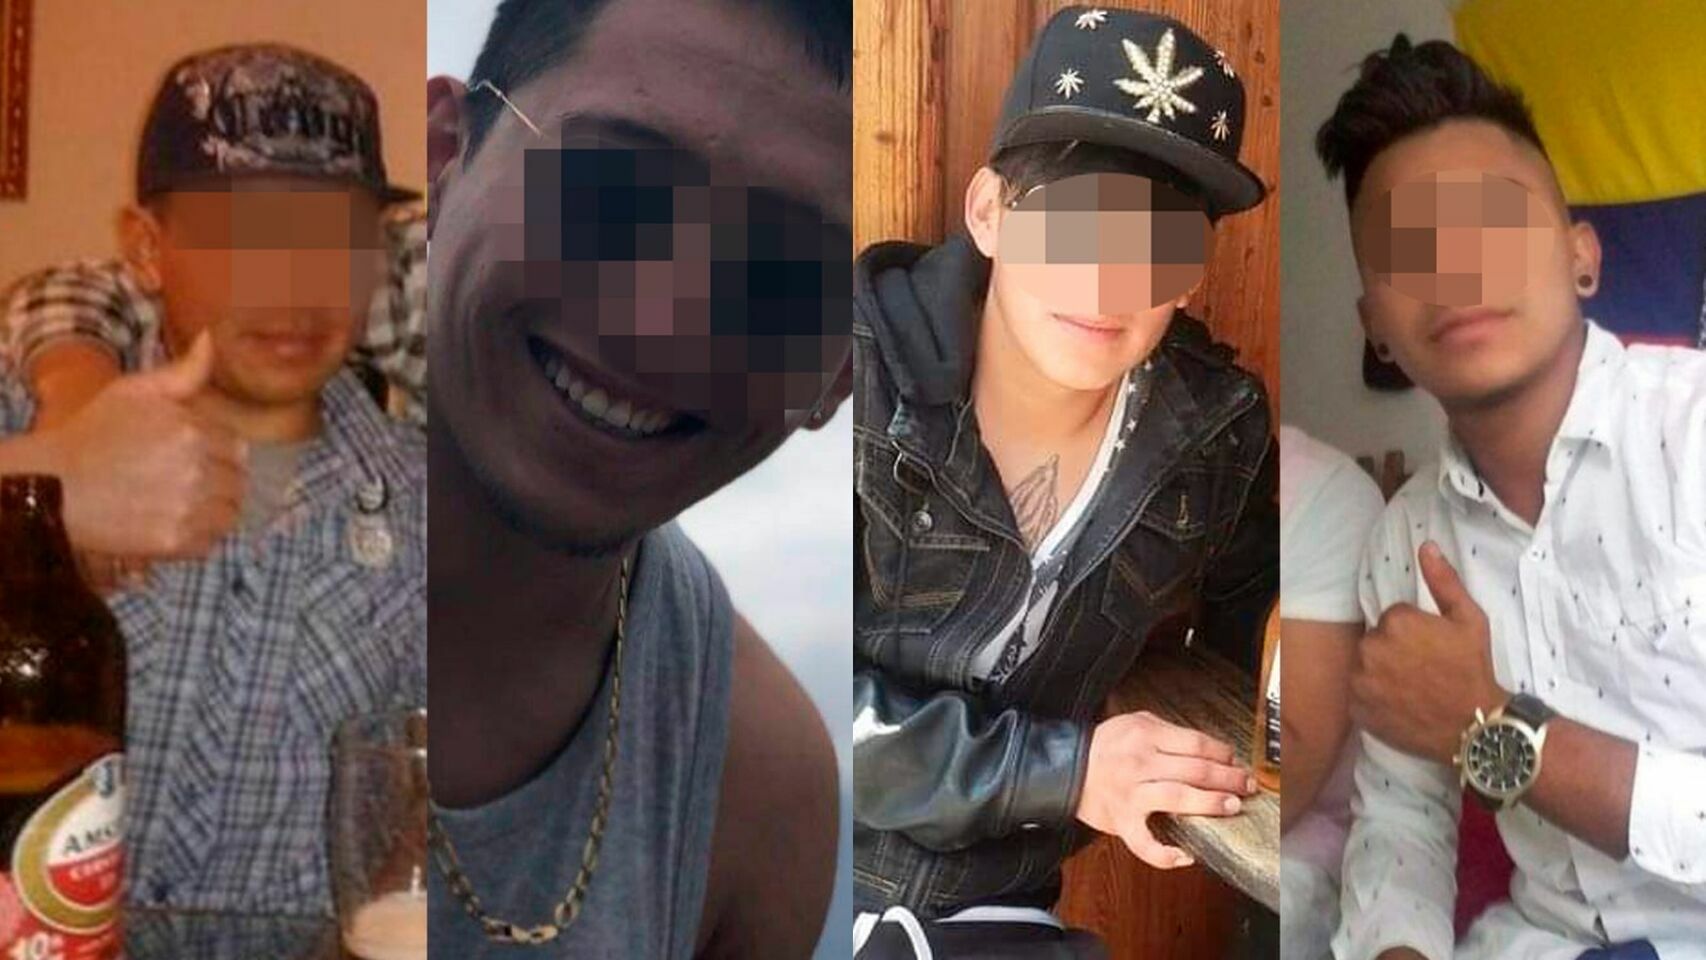 Los cuatro jóvenes de origen ecuatoriano encarcelados por la presunta violación cometida sobre una joven de 19 años.